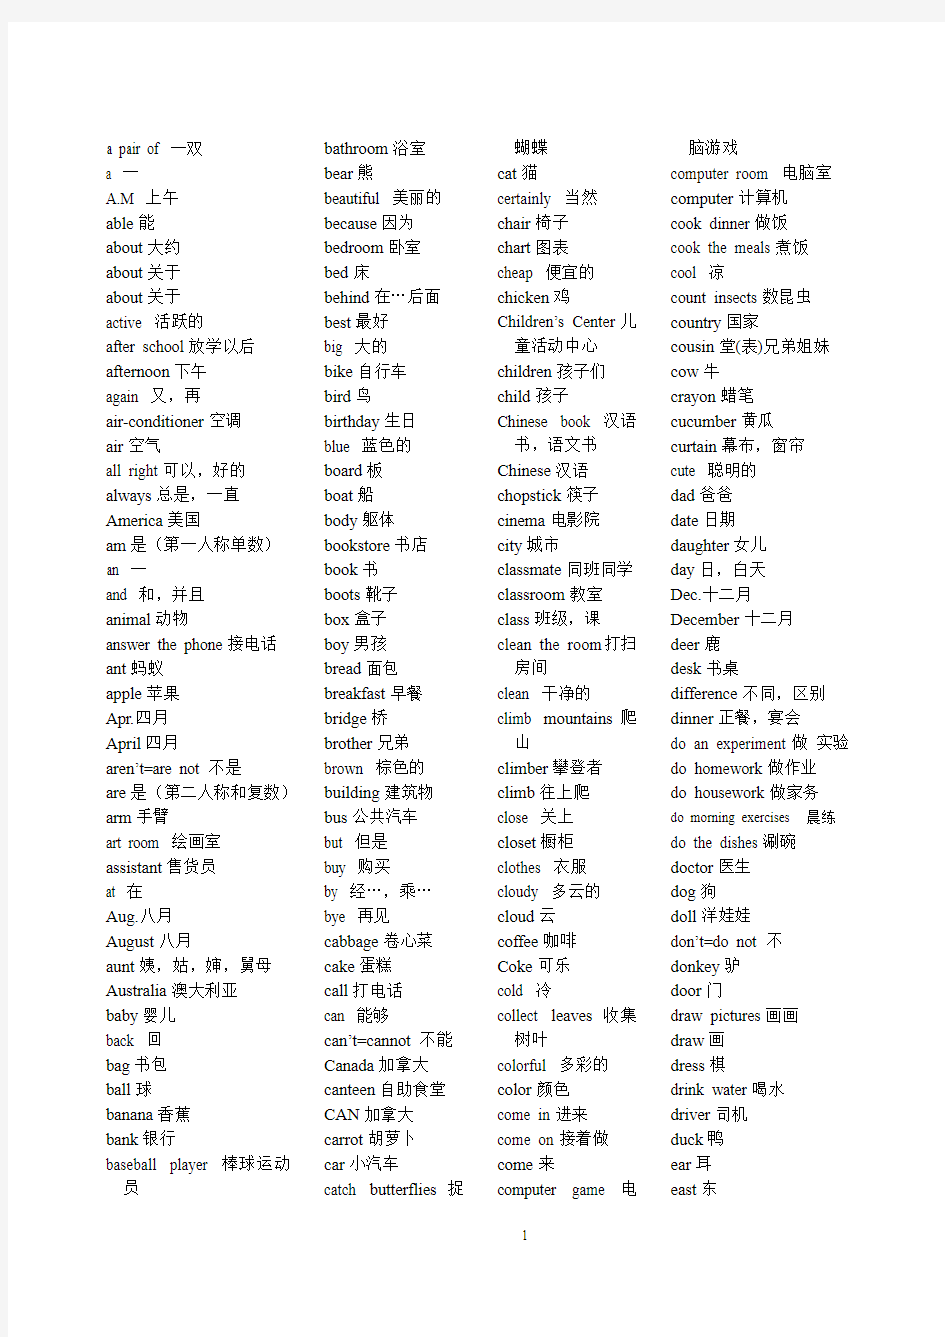 牛津版小学六年级英语词汇表(排序)